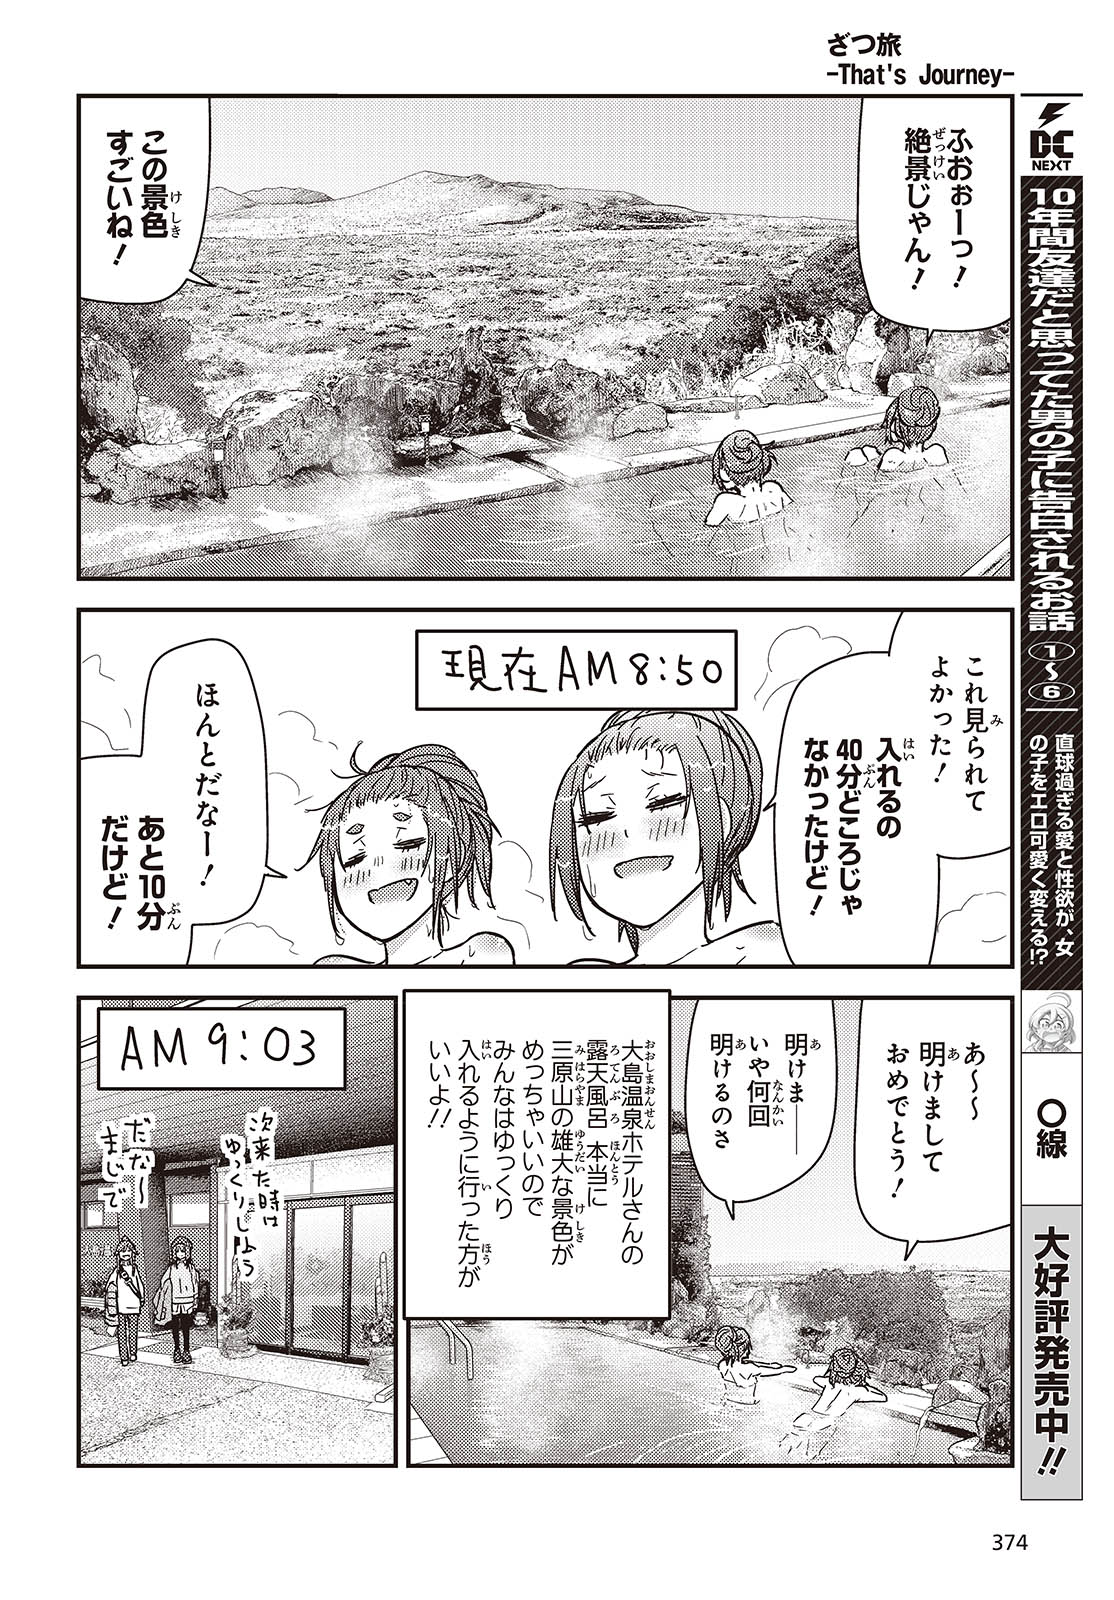 ざつ旅-That’s Journey- 第37話 - Page 18